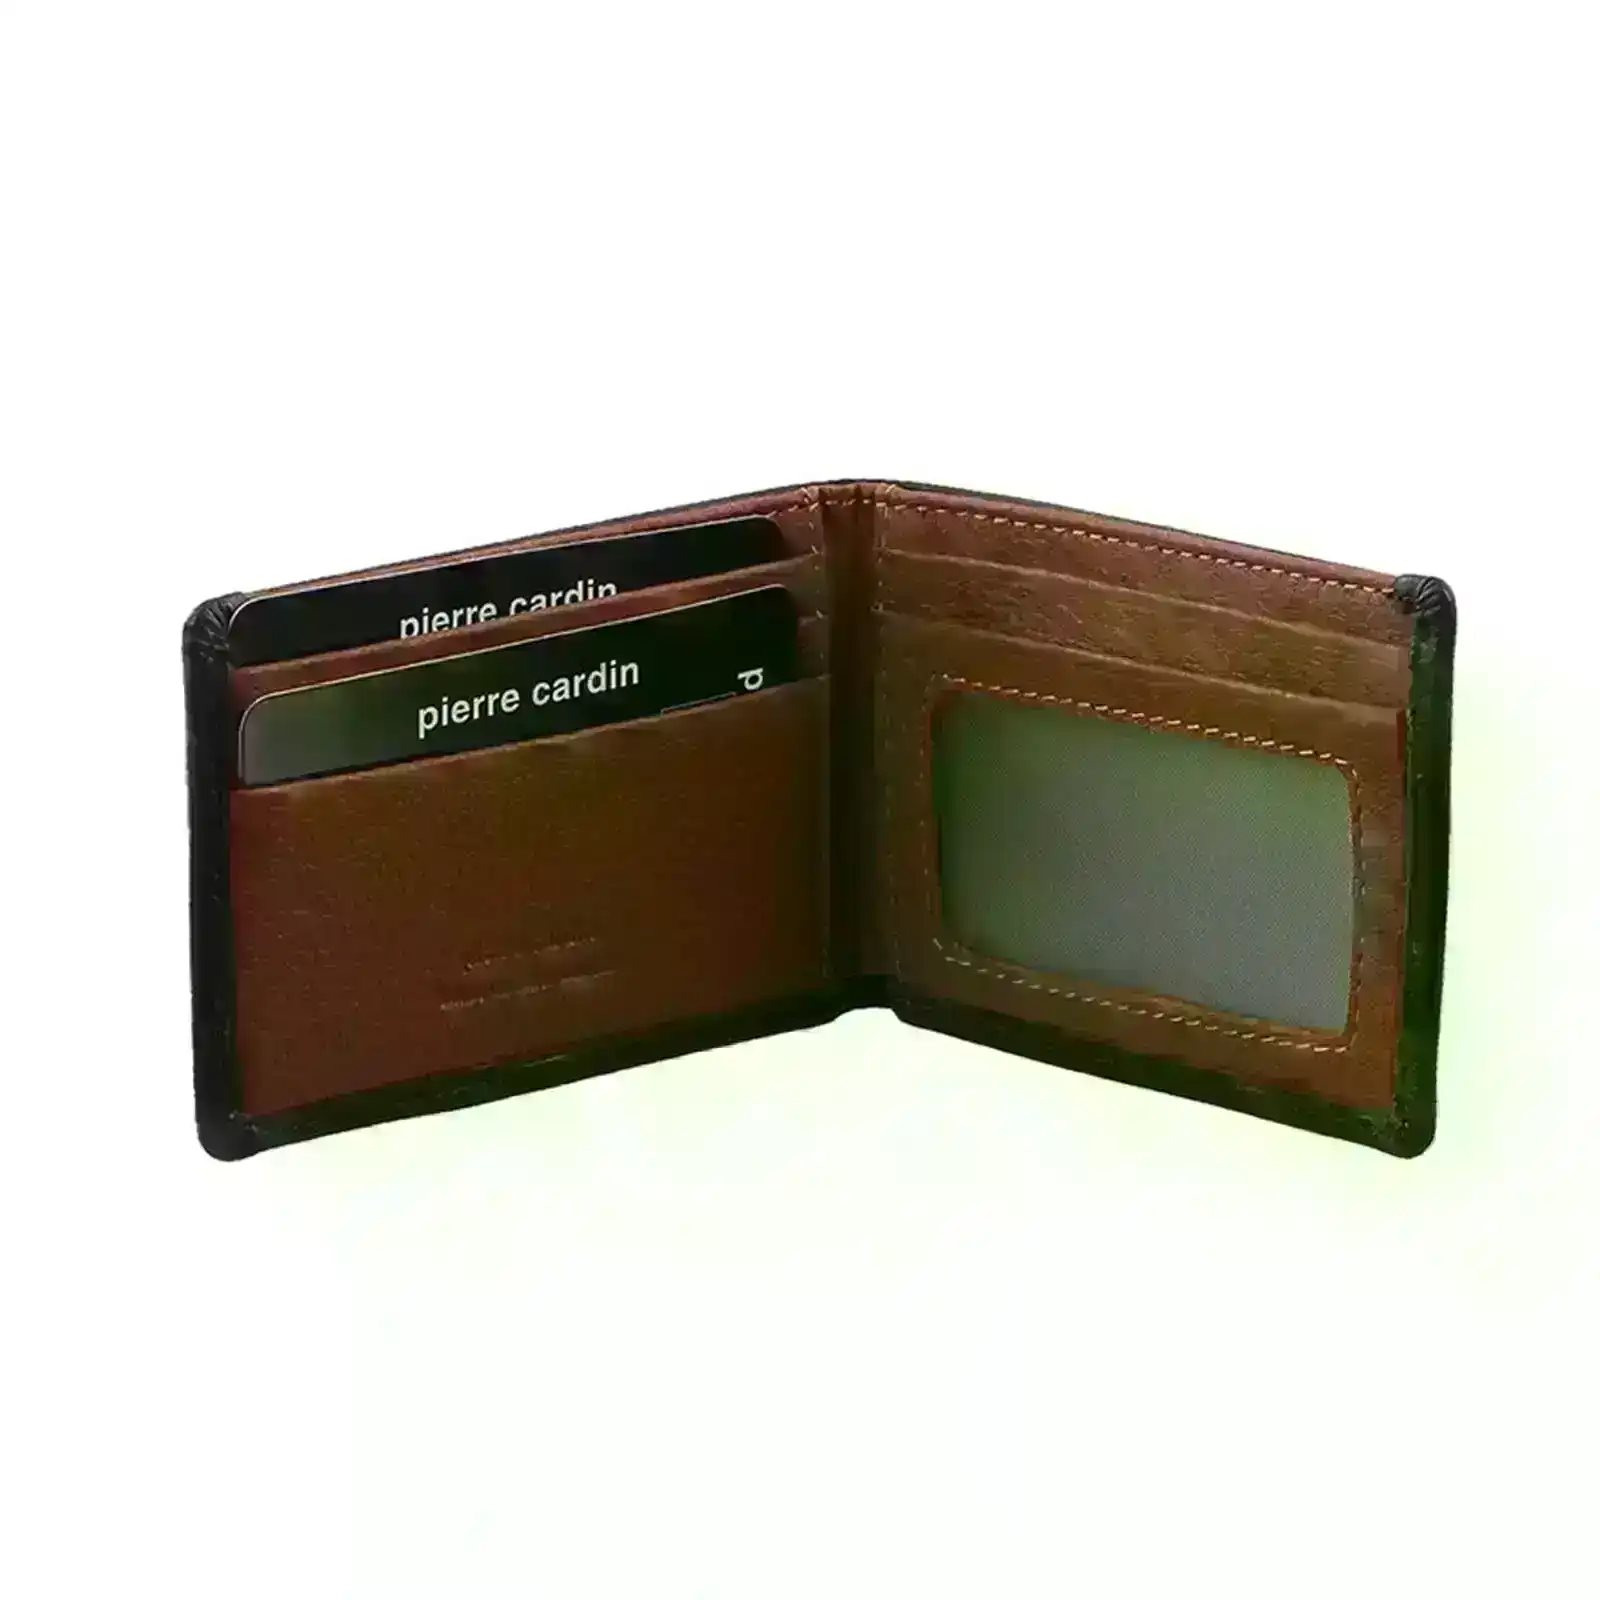 Pierre Cardin Mens Leather RFID Italian Two-Tone Wallet - Black Cognac